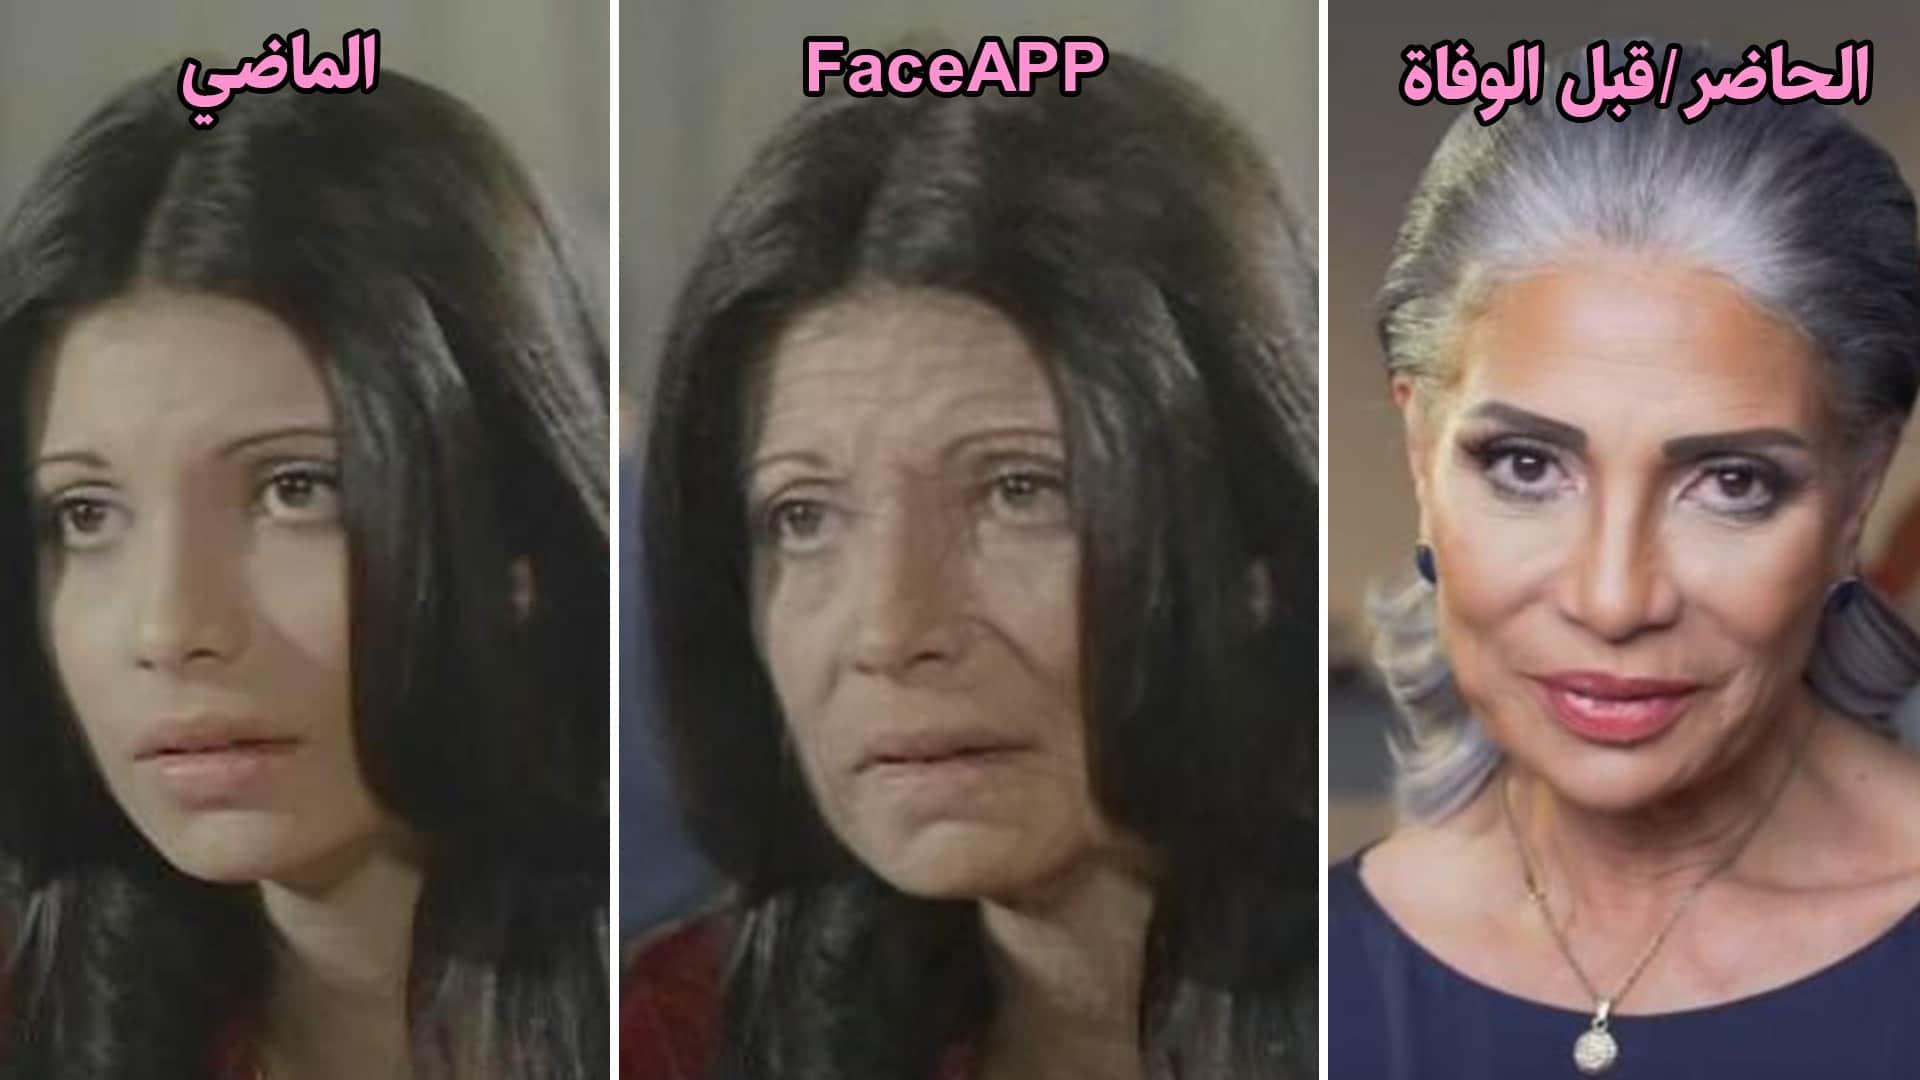 سوسن بدر - face app